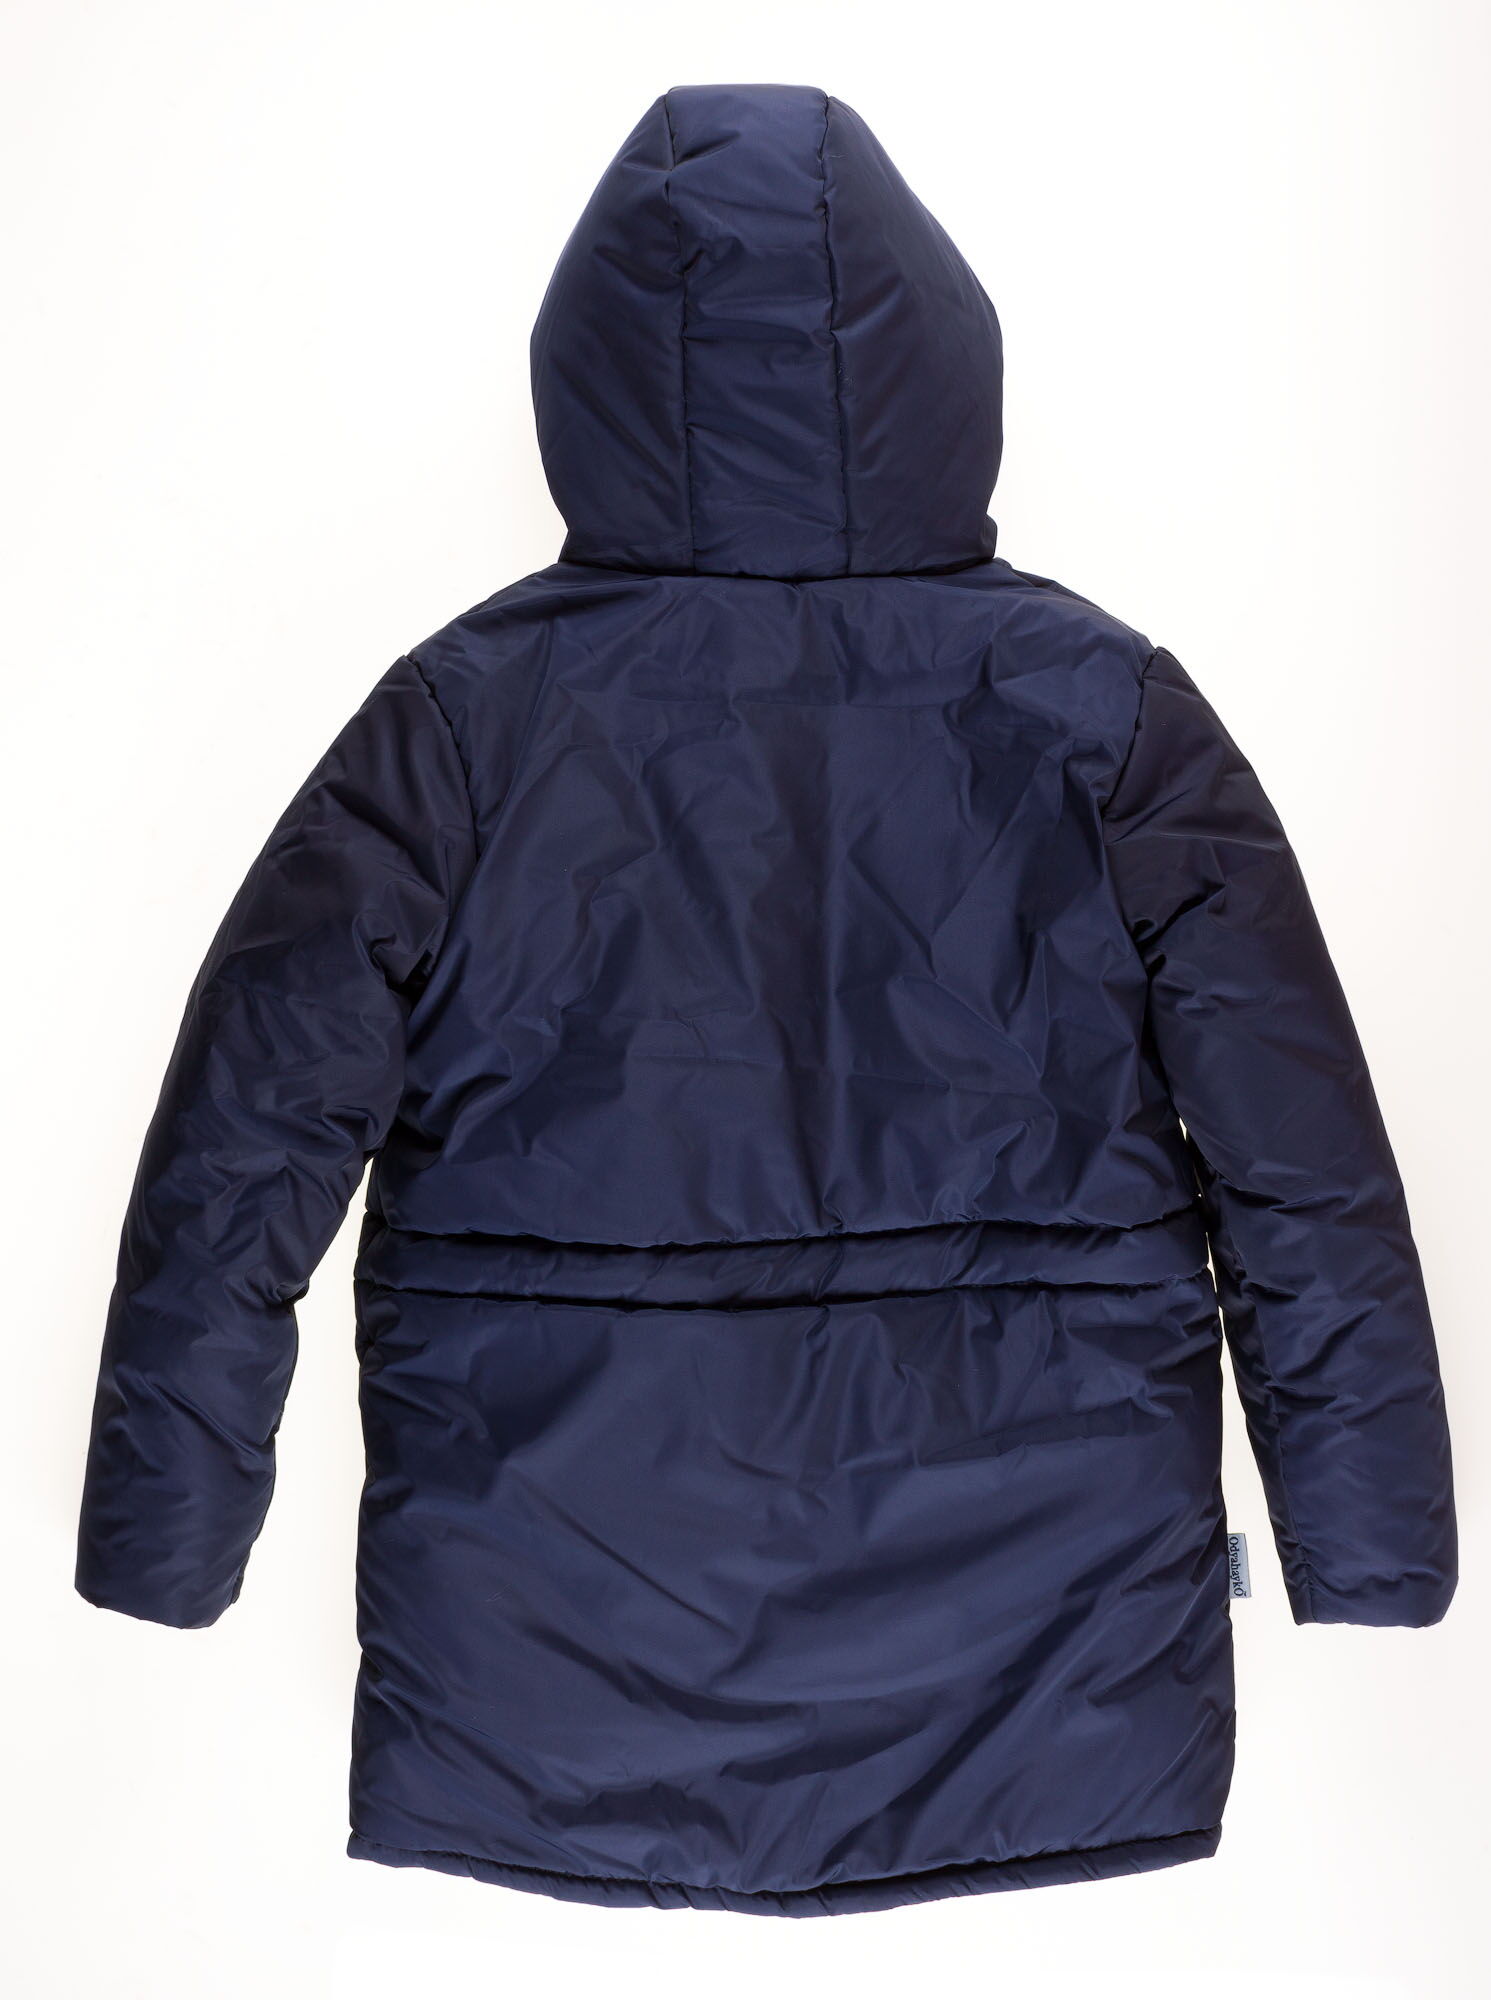 Куртка зимняя для девочки Одягайко темно-синяя 20026 - размеры